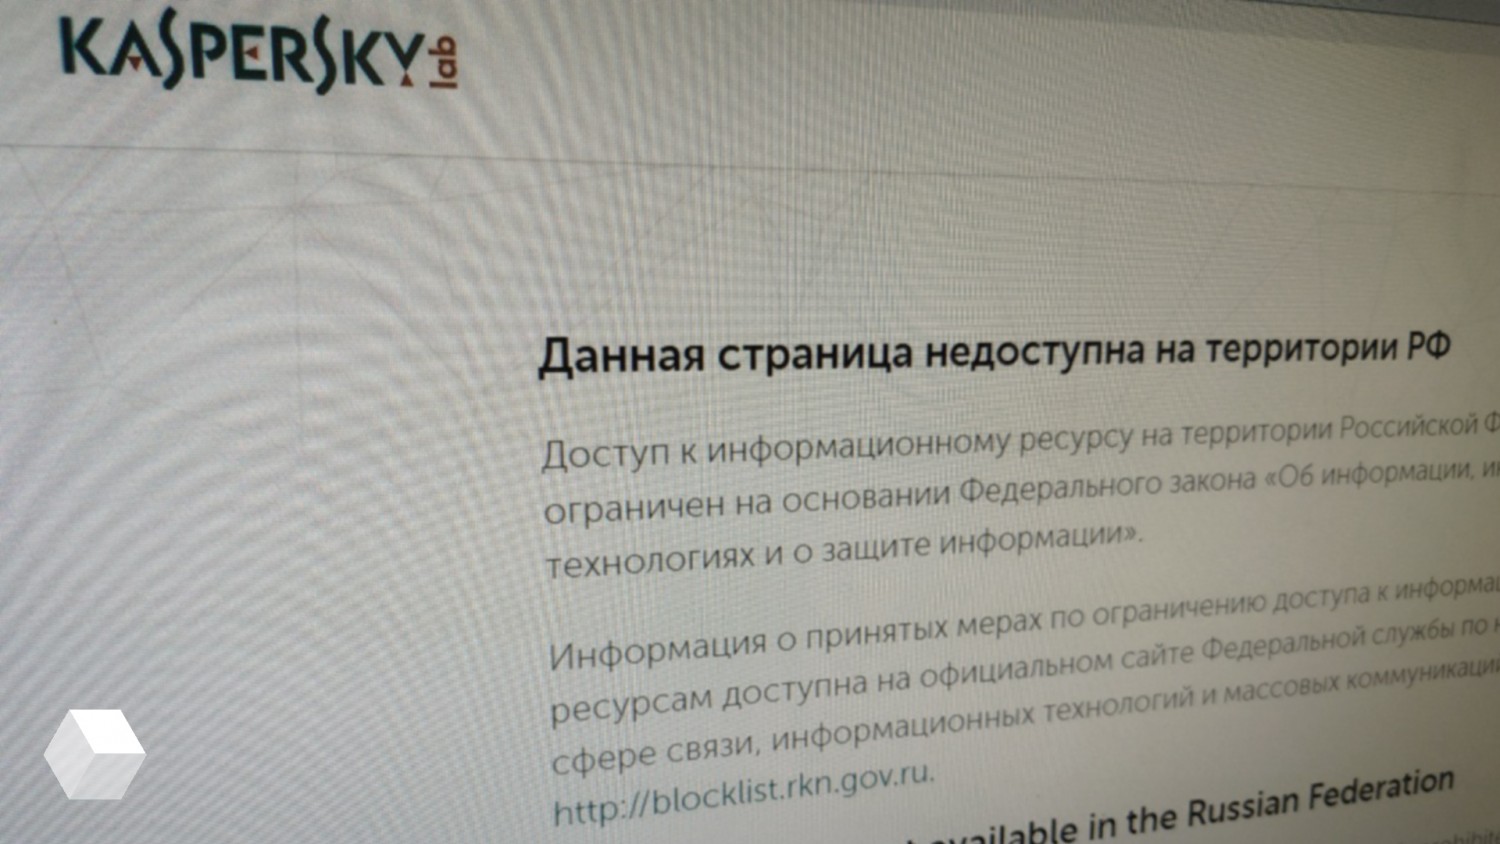 Доступ к сайту запрещен лаборатории Касперского. Страница недоступна. Впн запретили в России. Список запрещённых VPN В России.